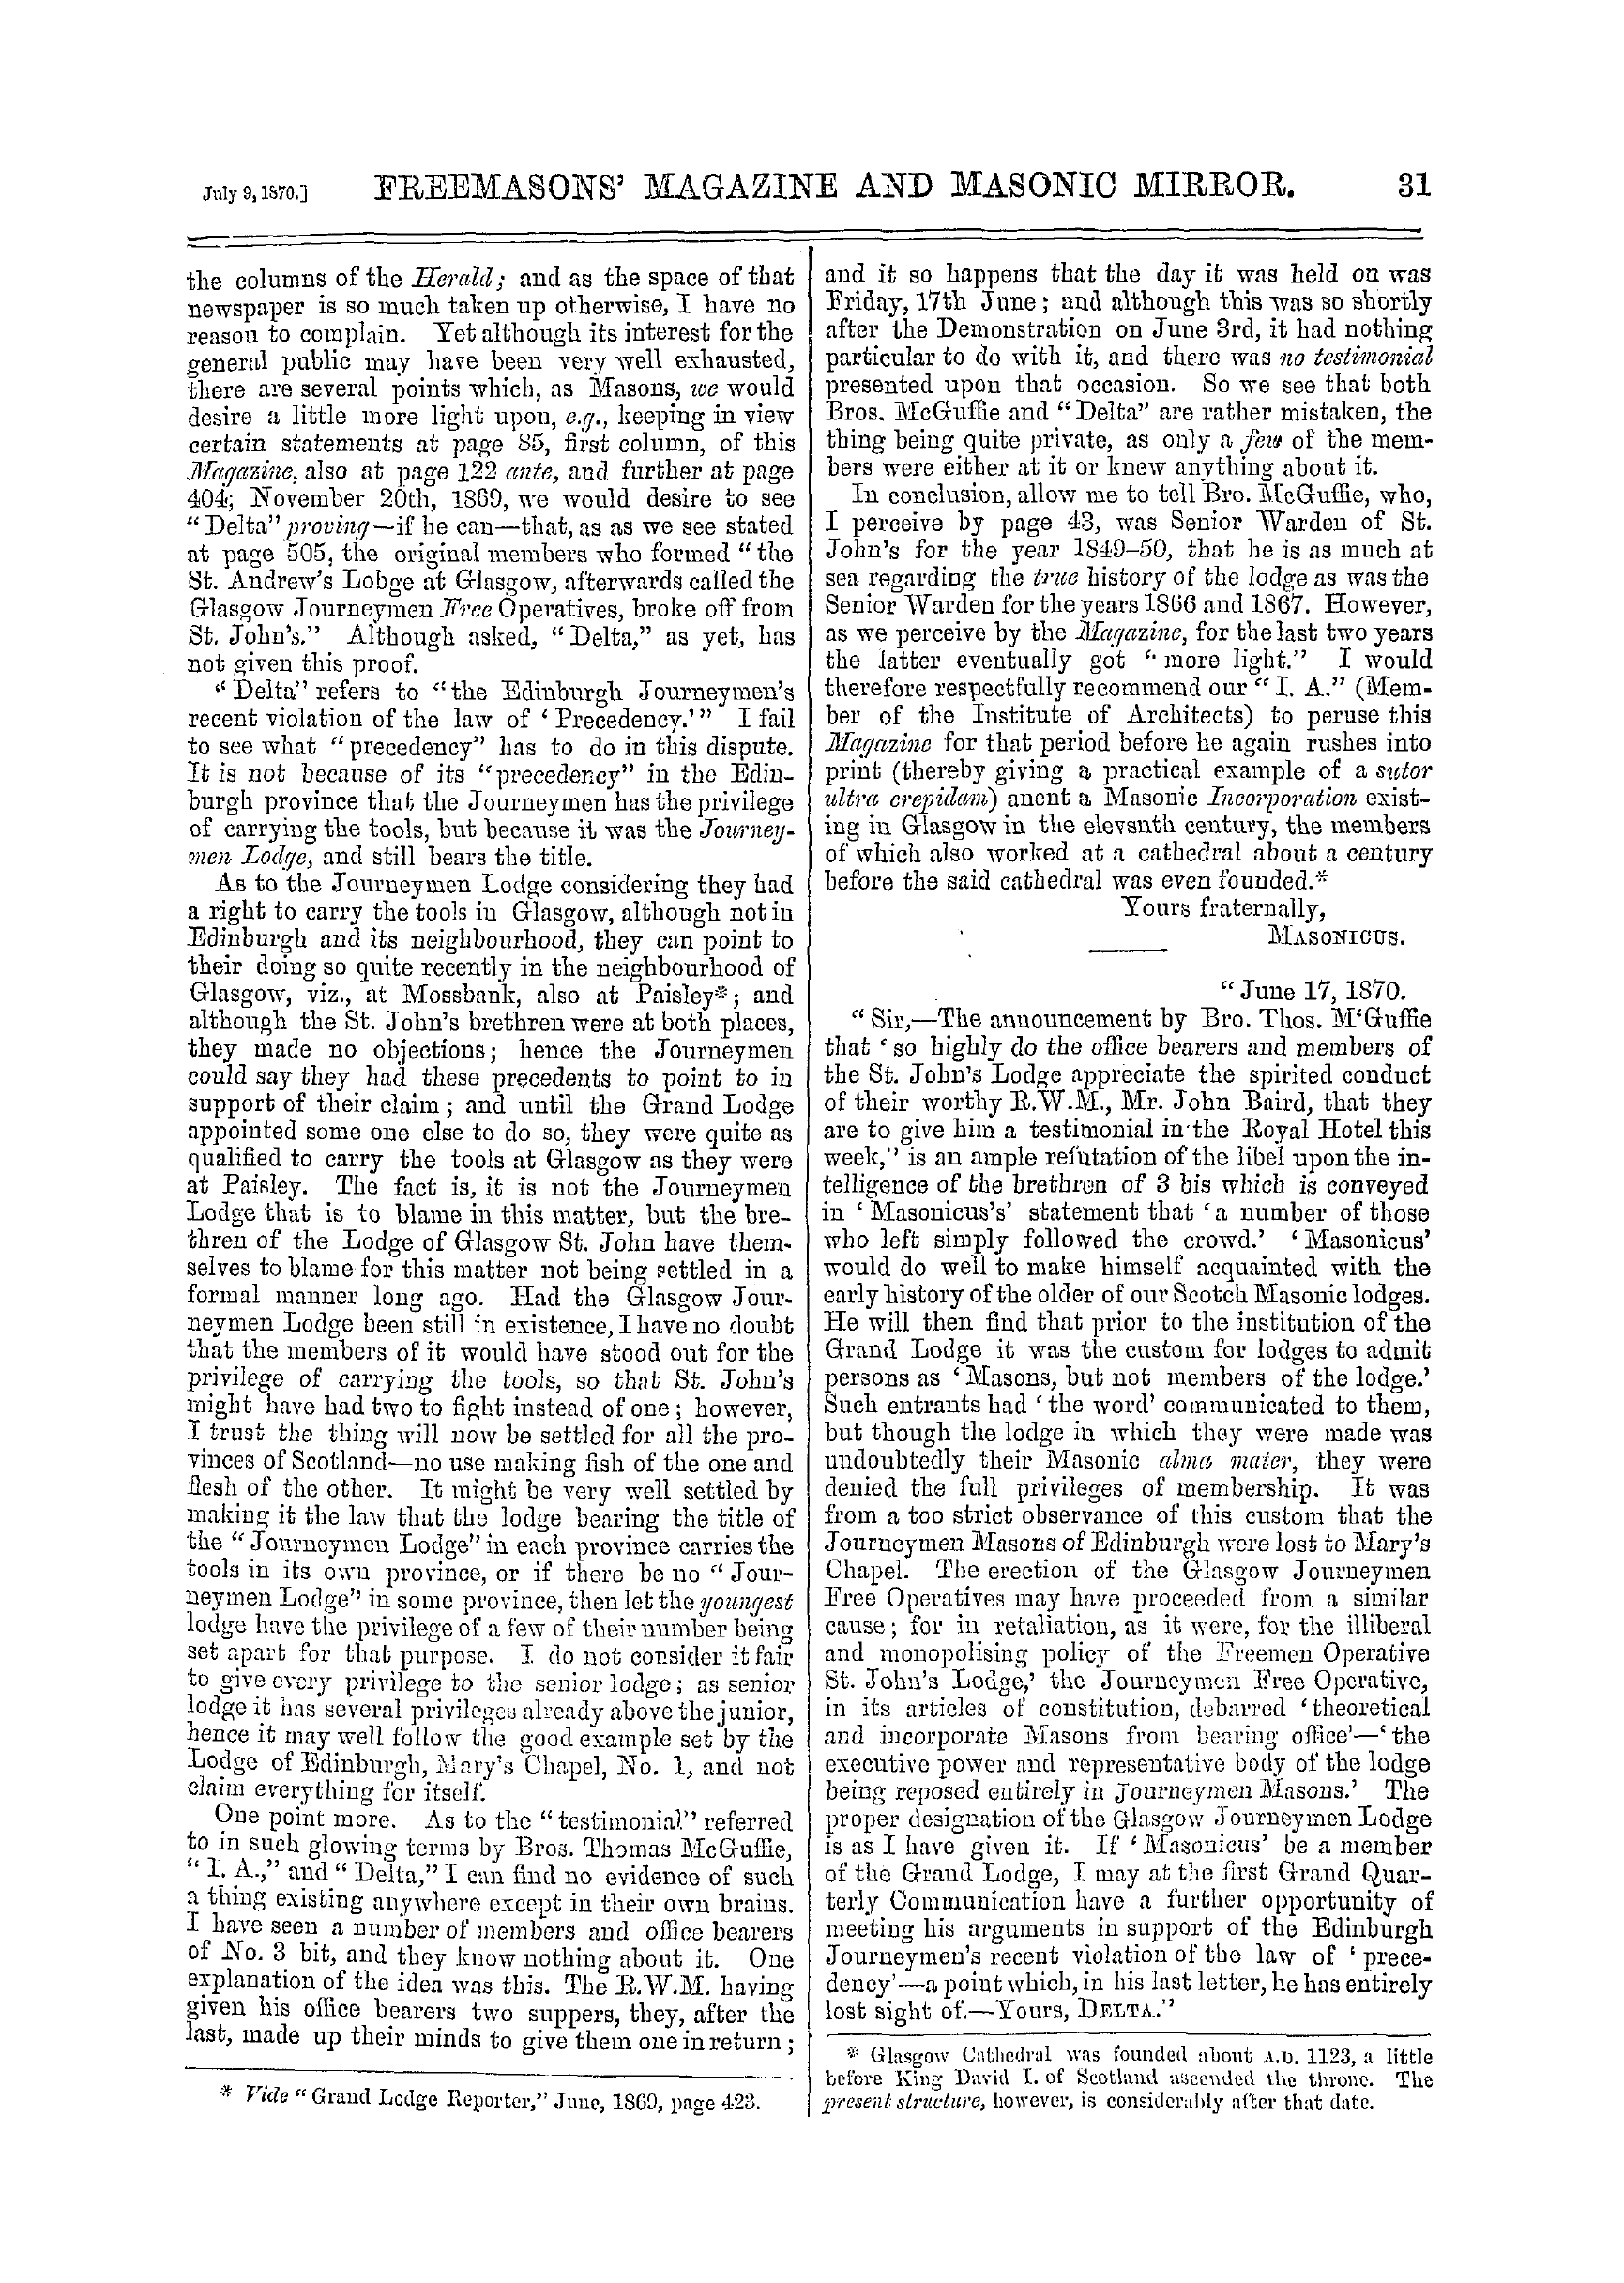 The Freemasons' Monthly Magazine: 1870-07-09: 11